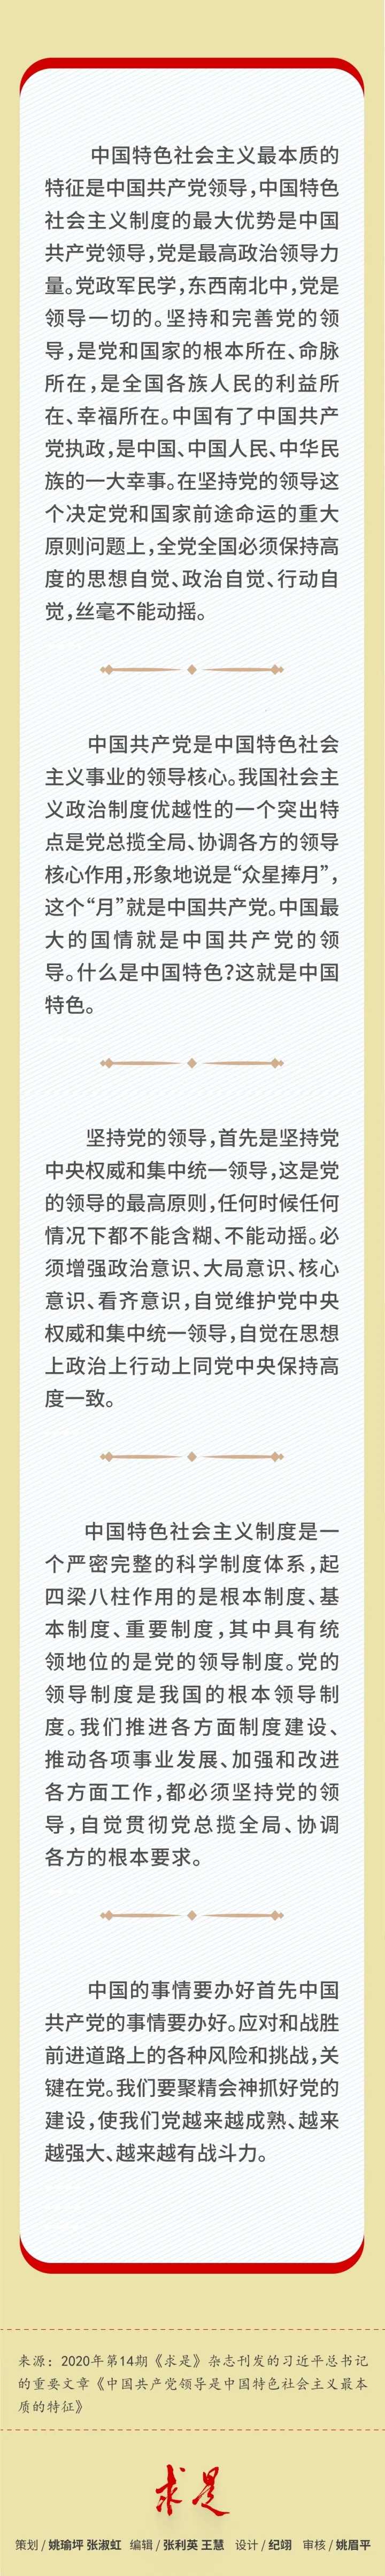 习近平总书记阐述“中国共产党领导是中国特色社会主义最本质的特征”